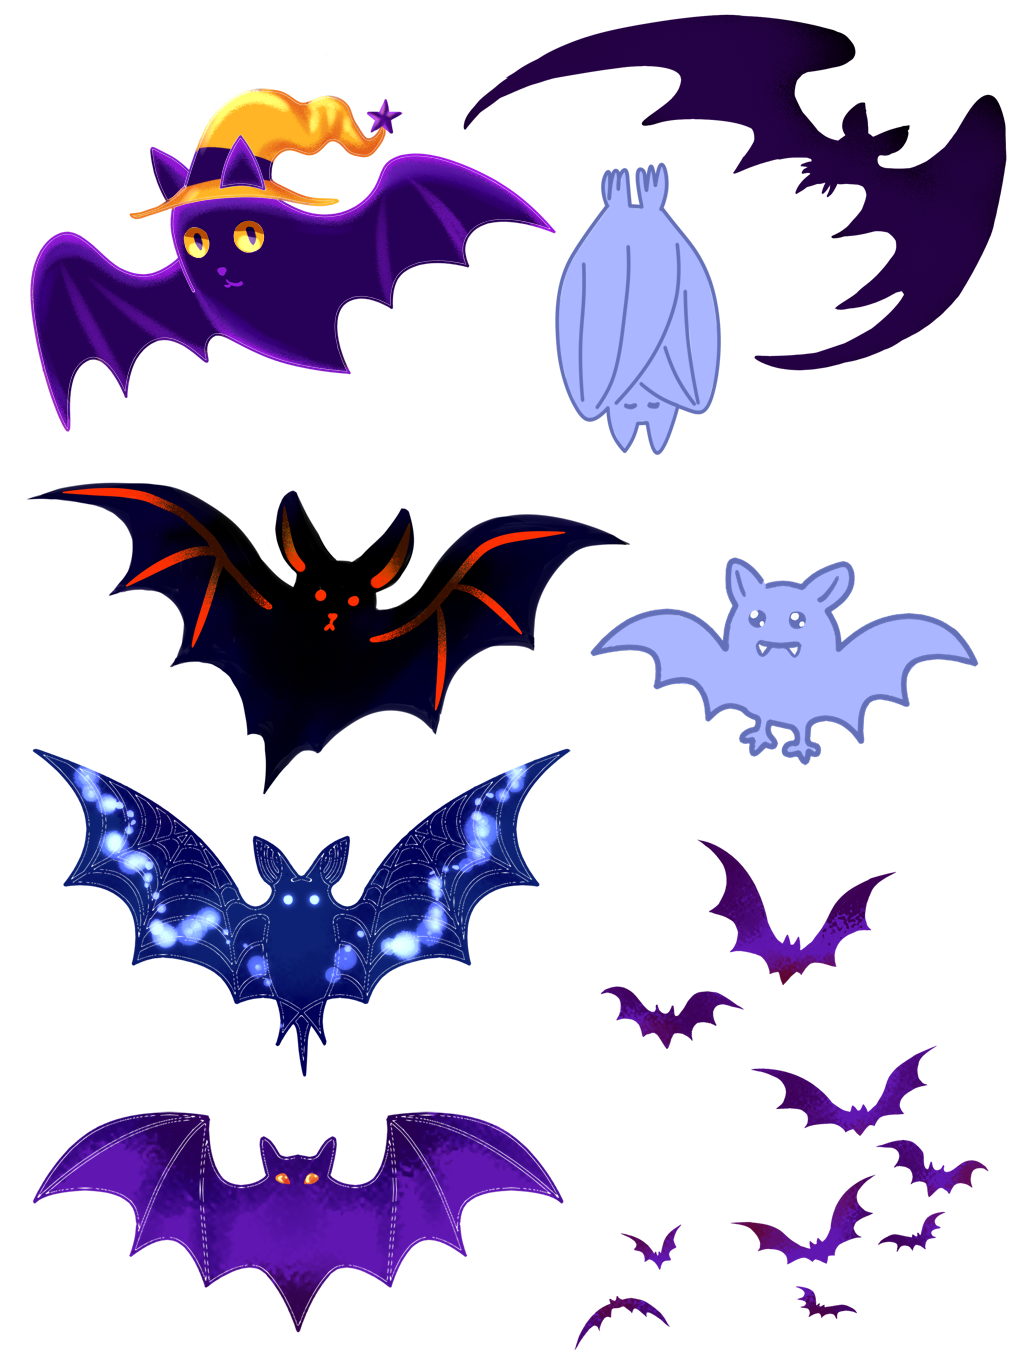 Gatinho De Halloween E Elementos De Morcego PNG Imagens Gratuitas Para  Download - Lovepik